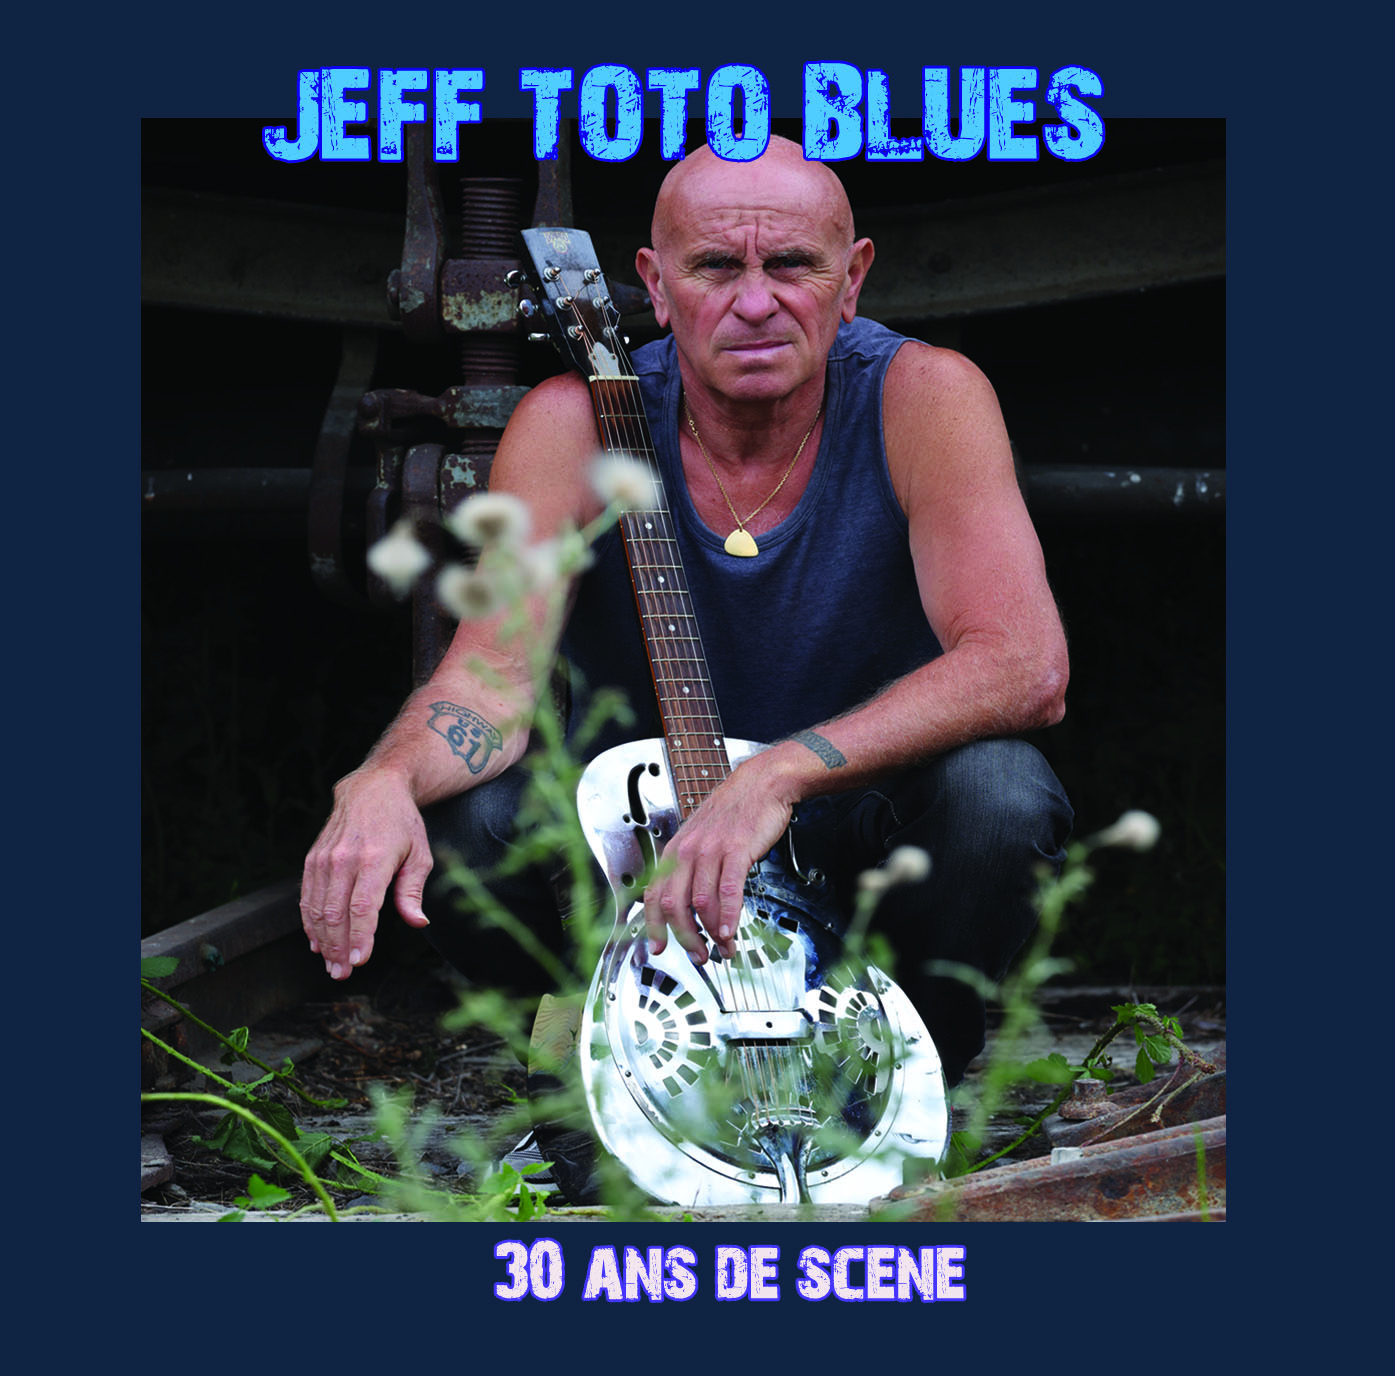 Jeff Toto Blues © Philippe Gilibert